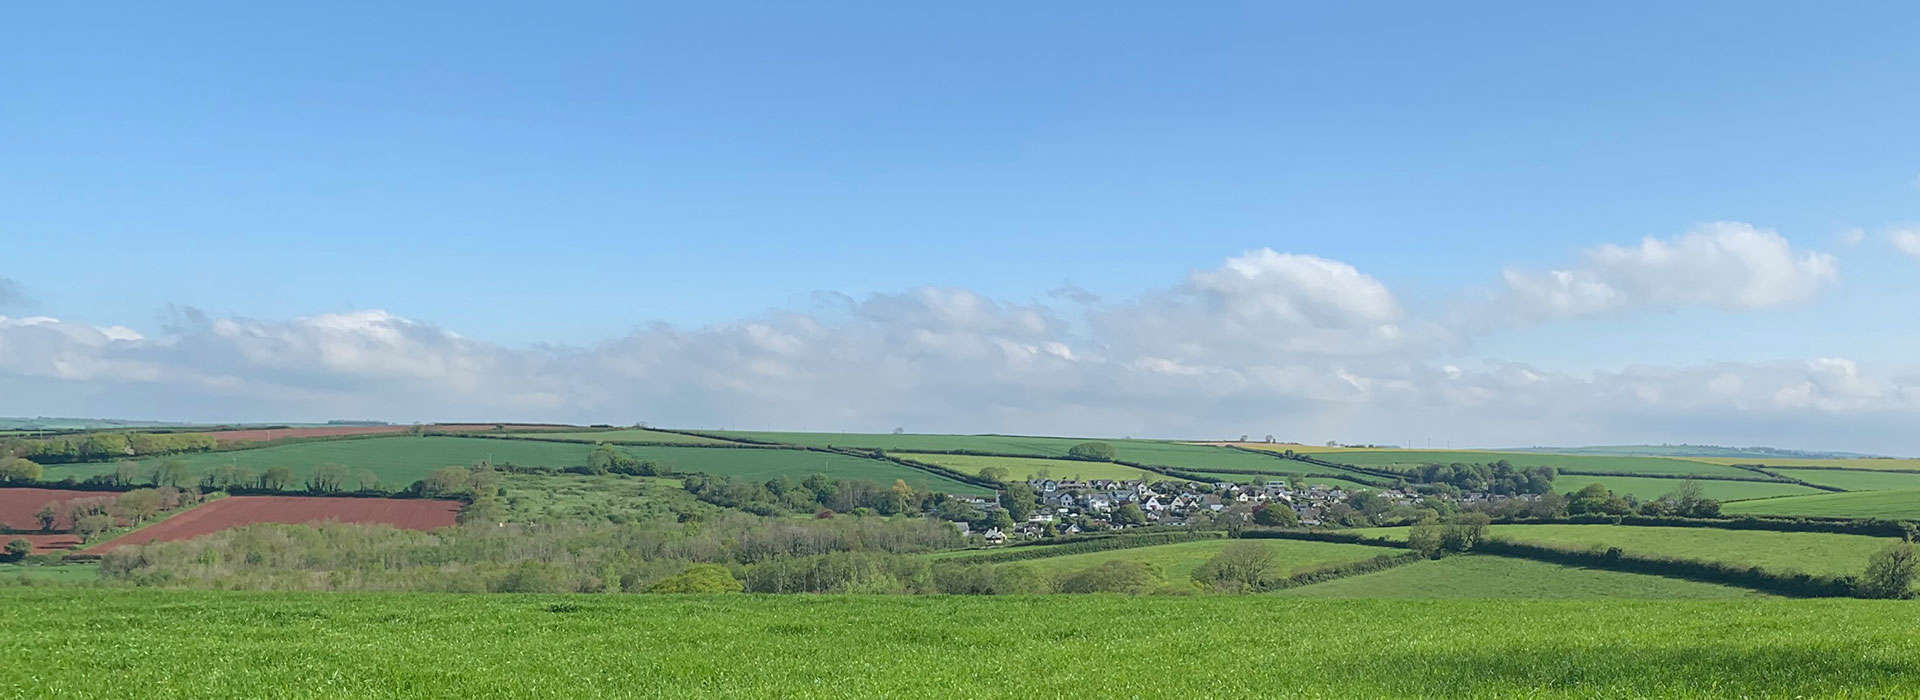 Landscape image in Stokenham